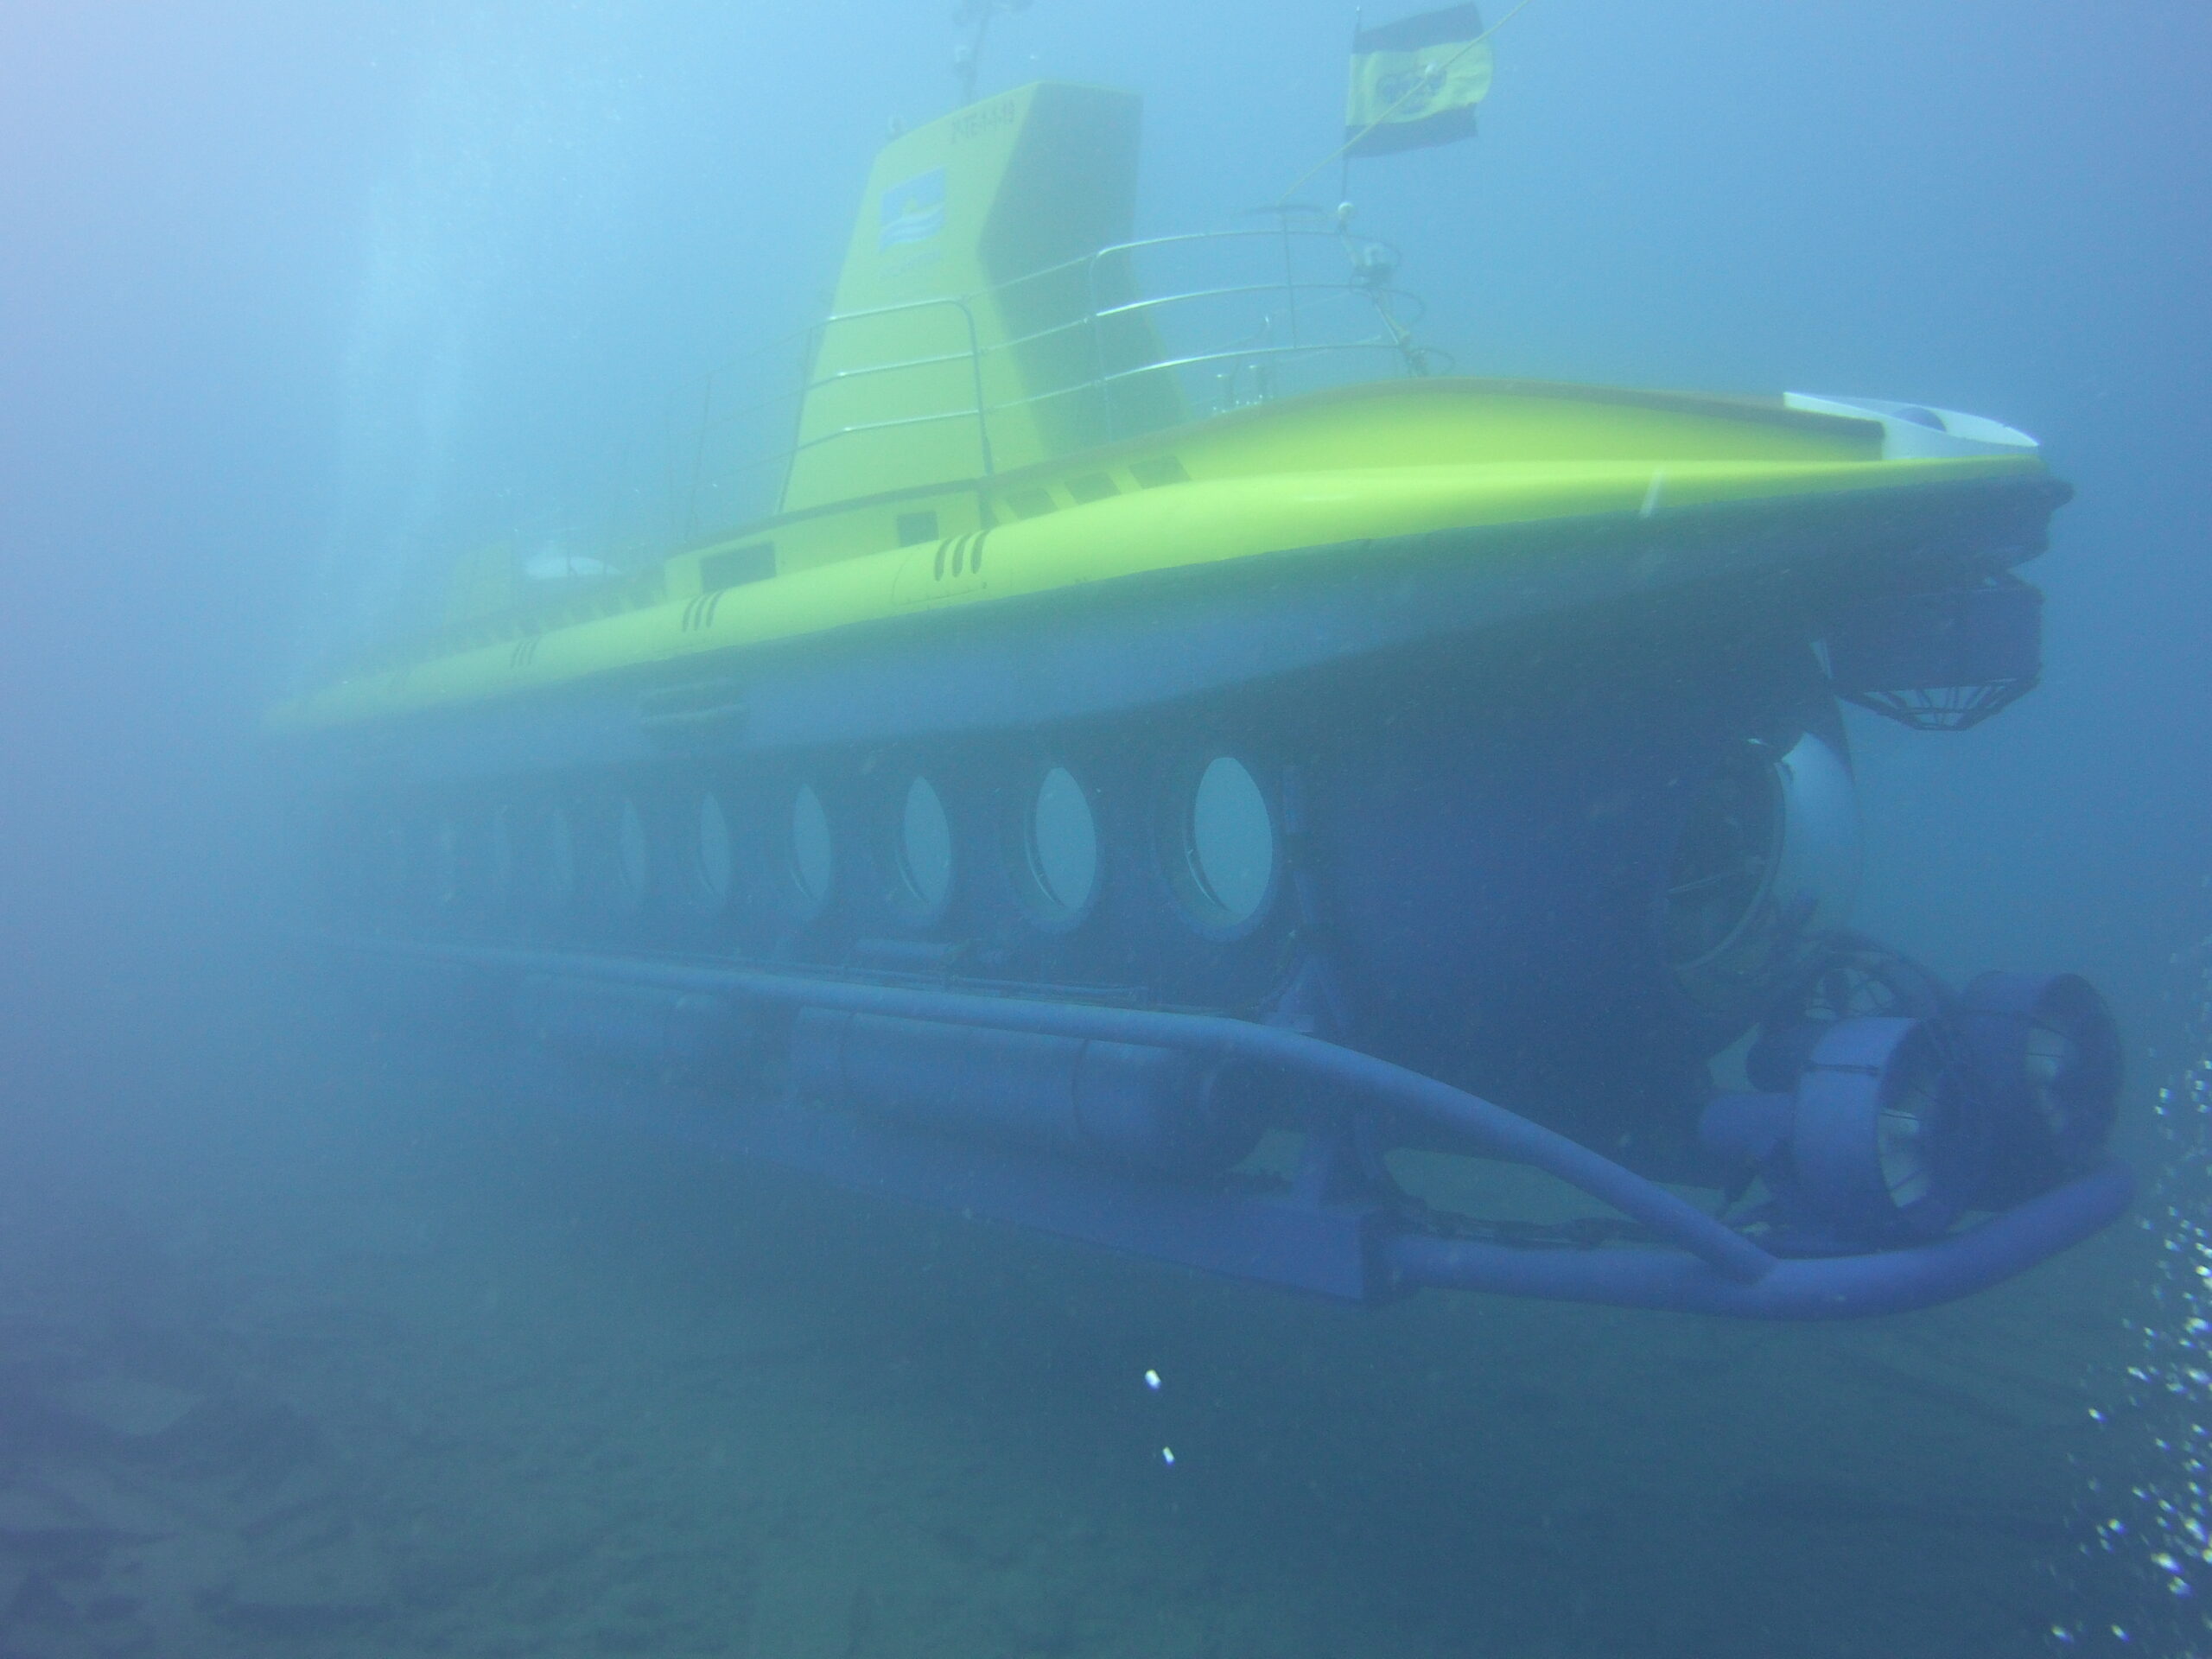 The yellow submarine